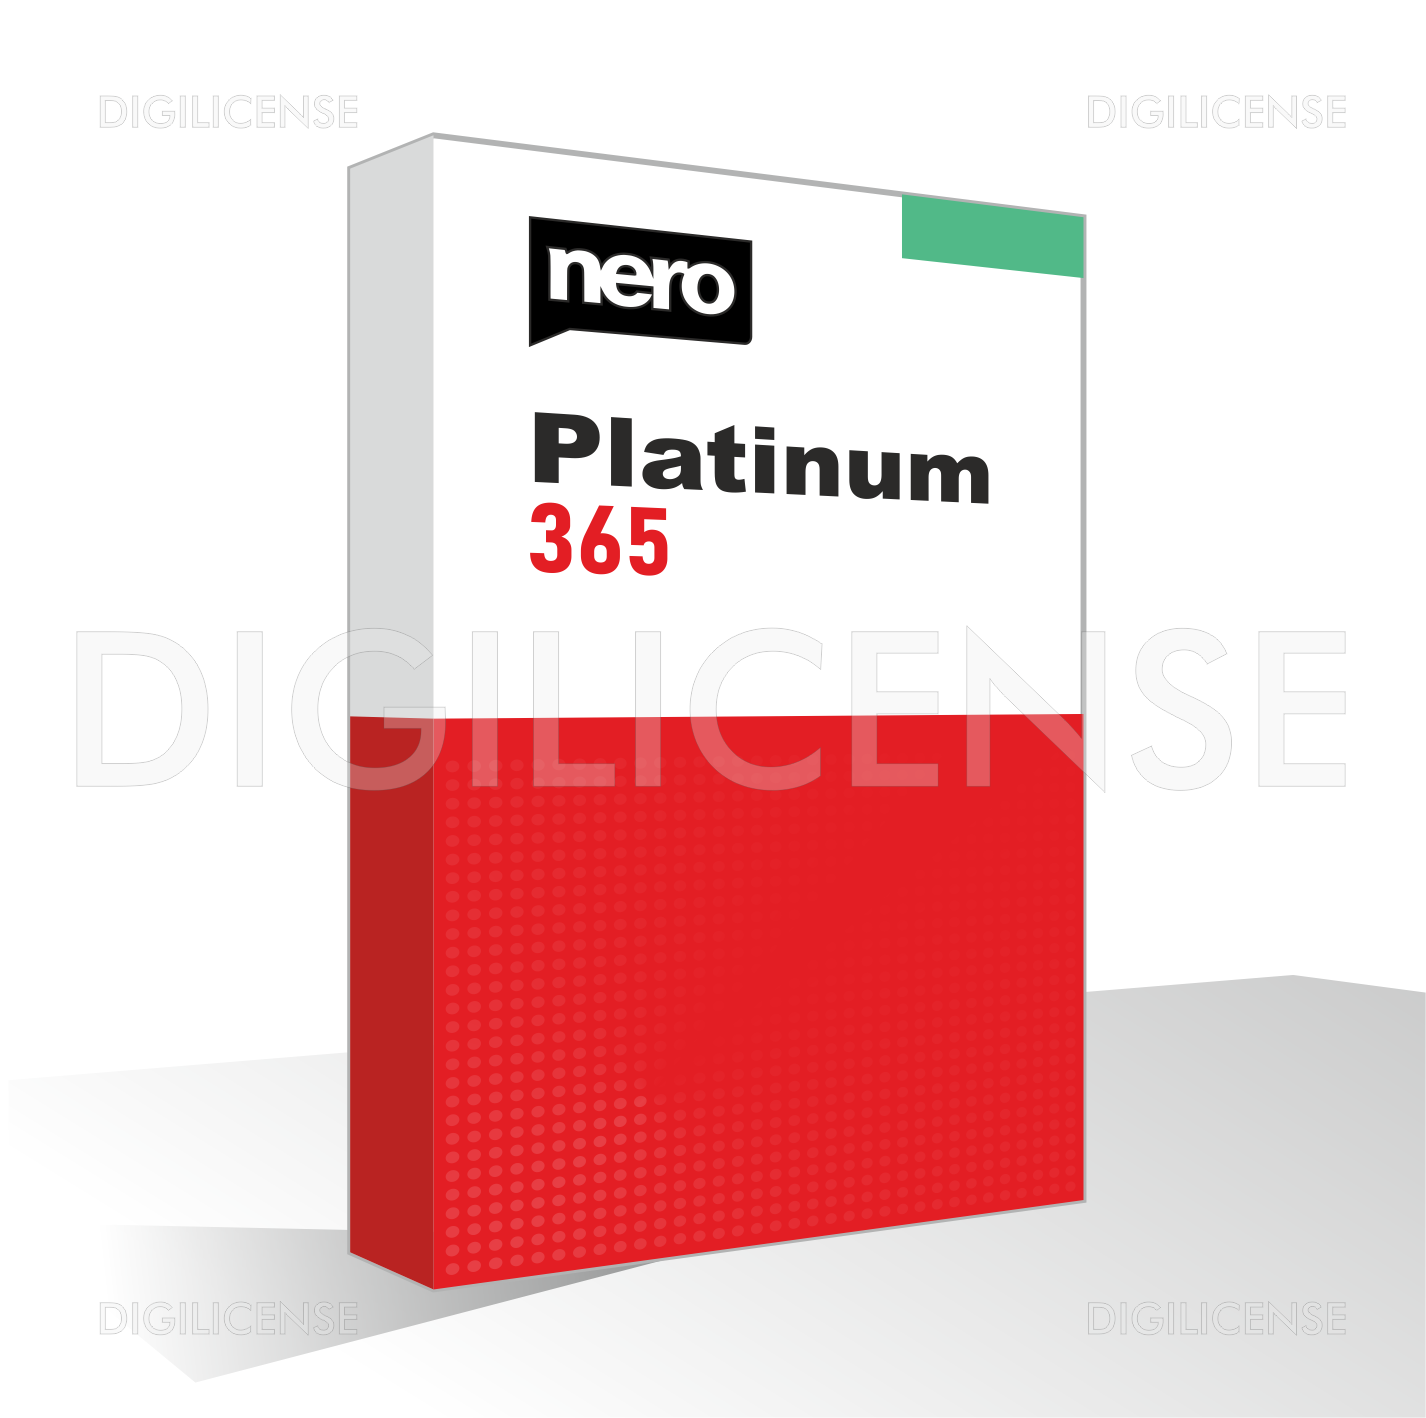 Nero Platinum 365 1 device 1 Year